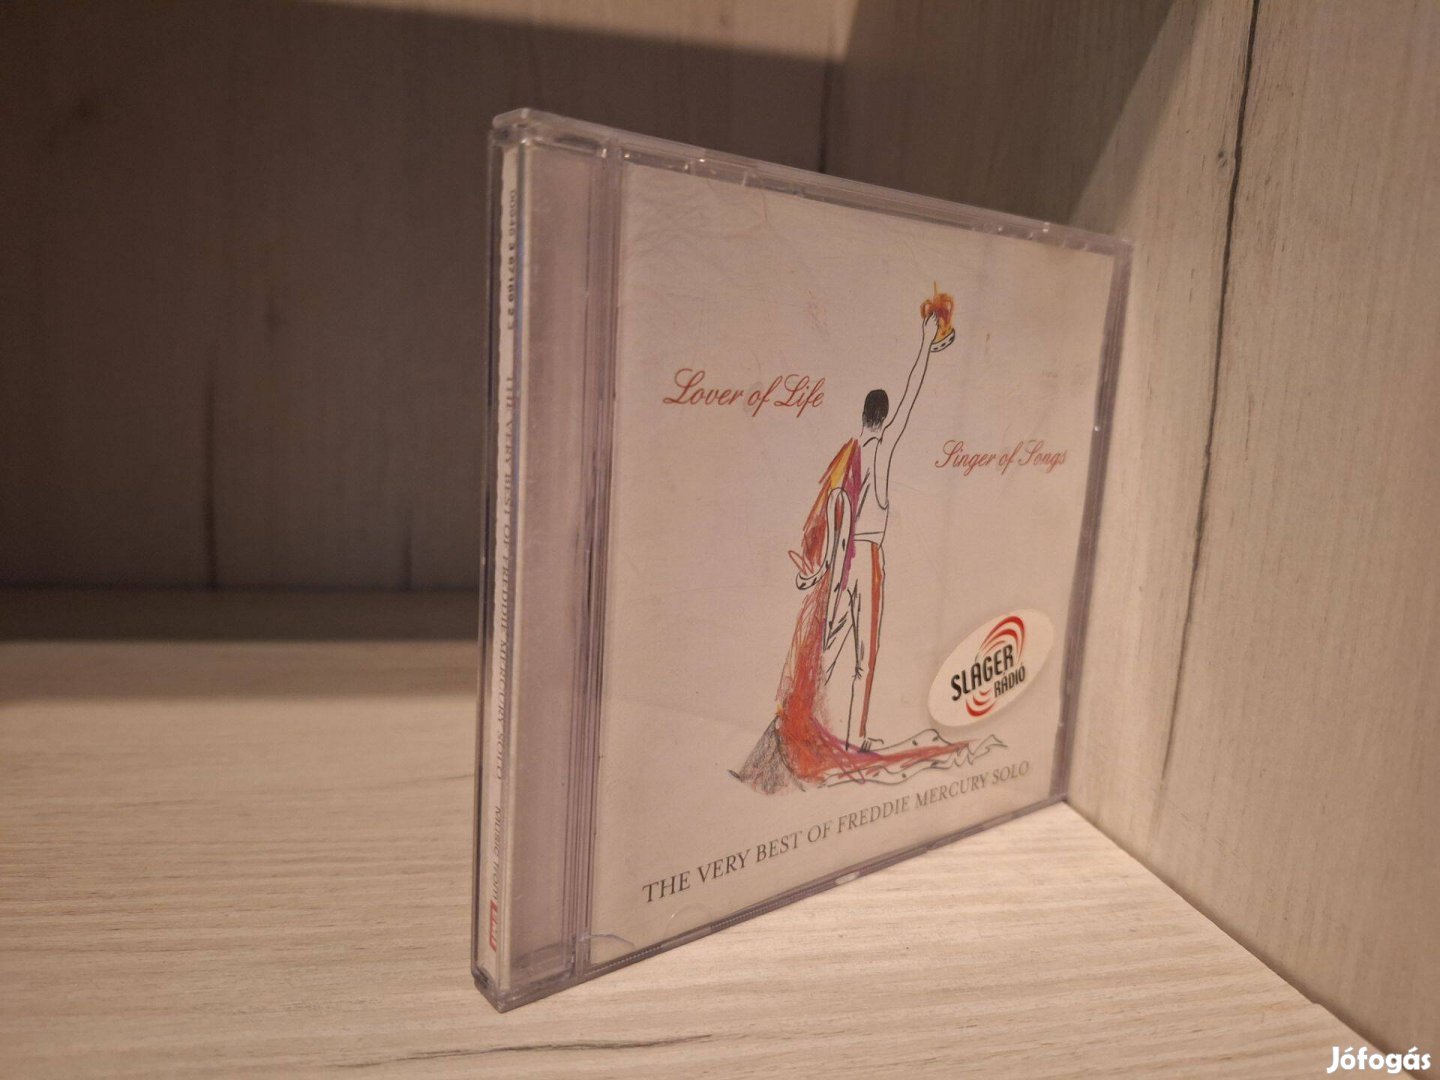 Lover Of Life - Singer Of Songs - The Very Best Of Freddie Mercury CD